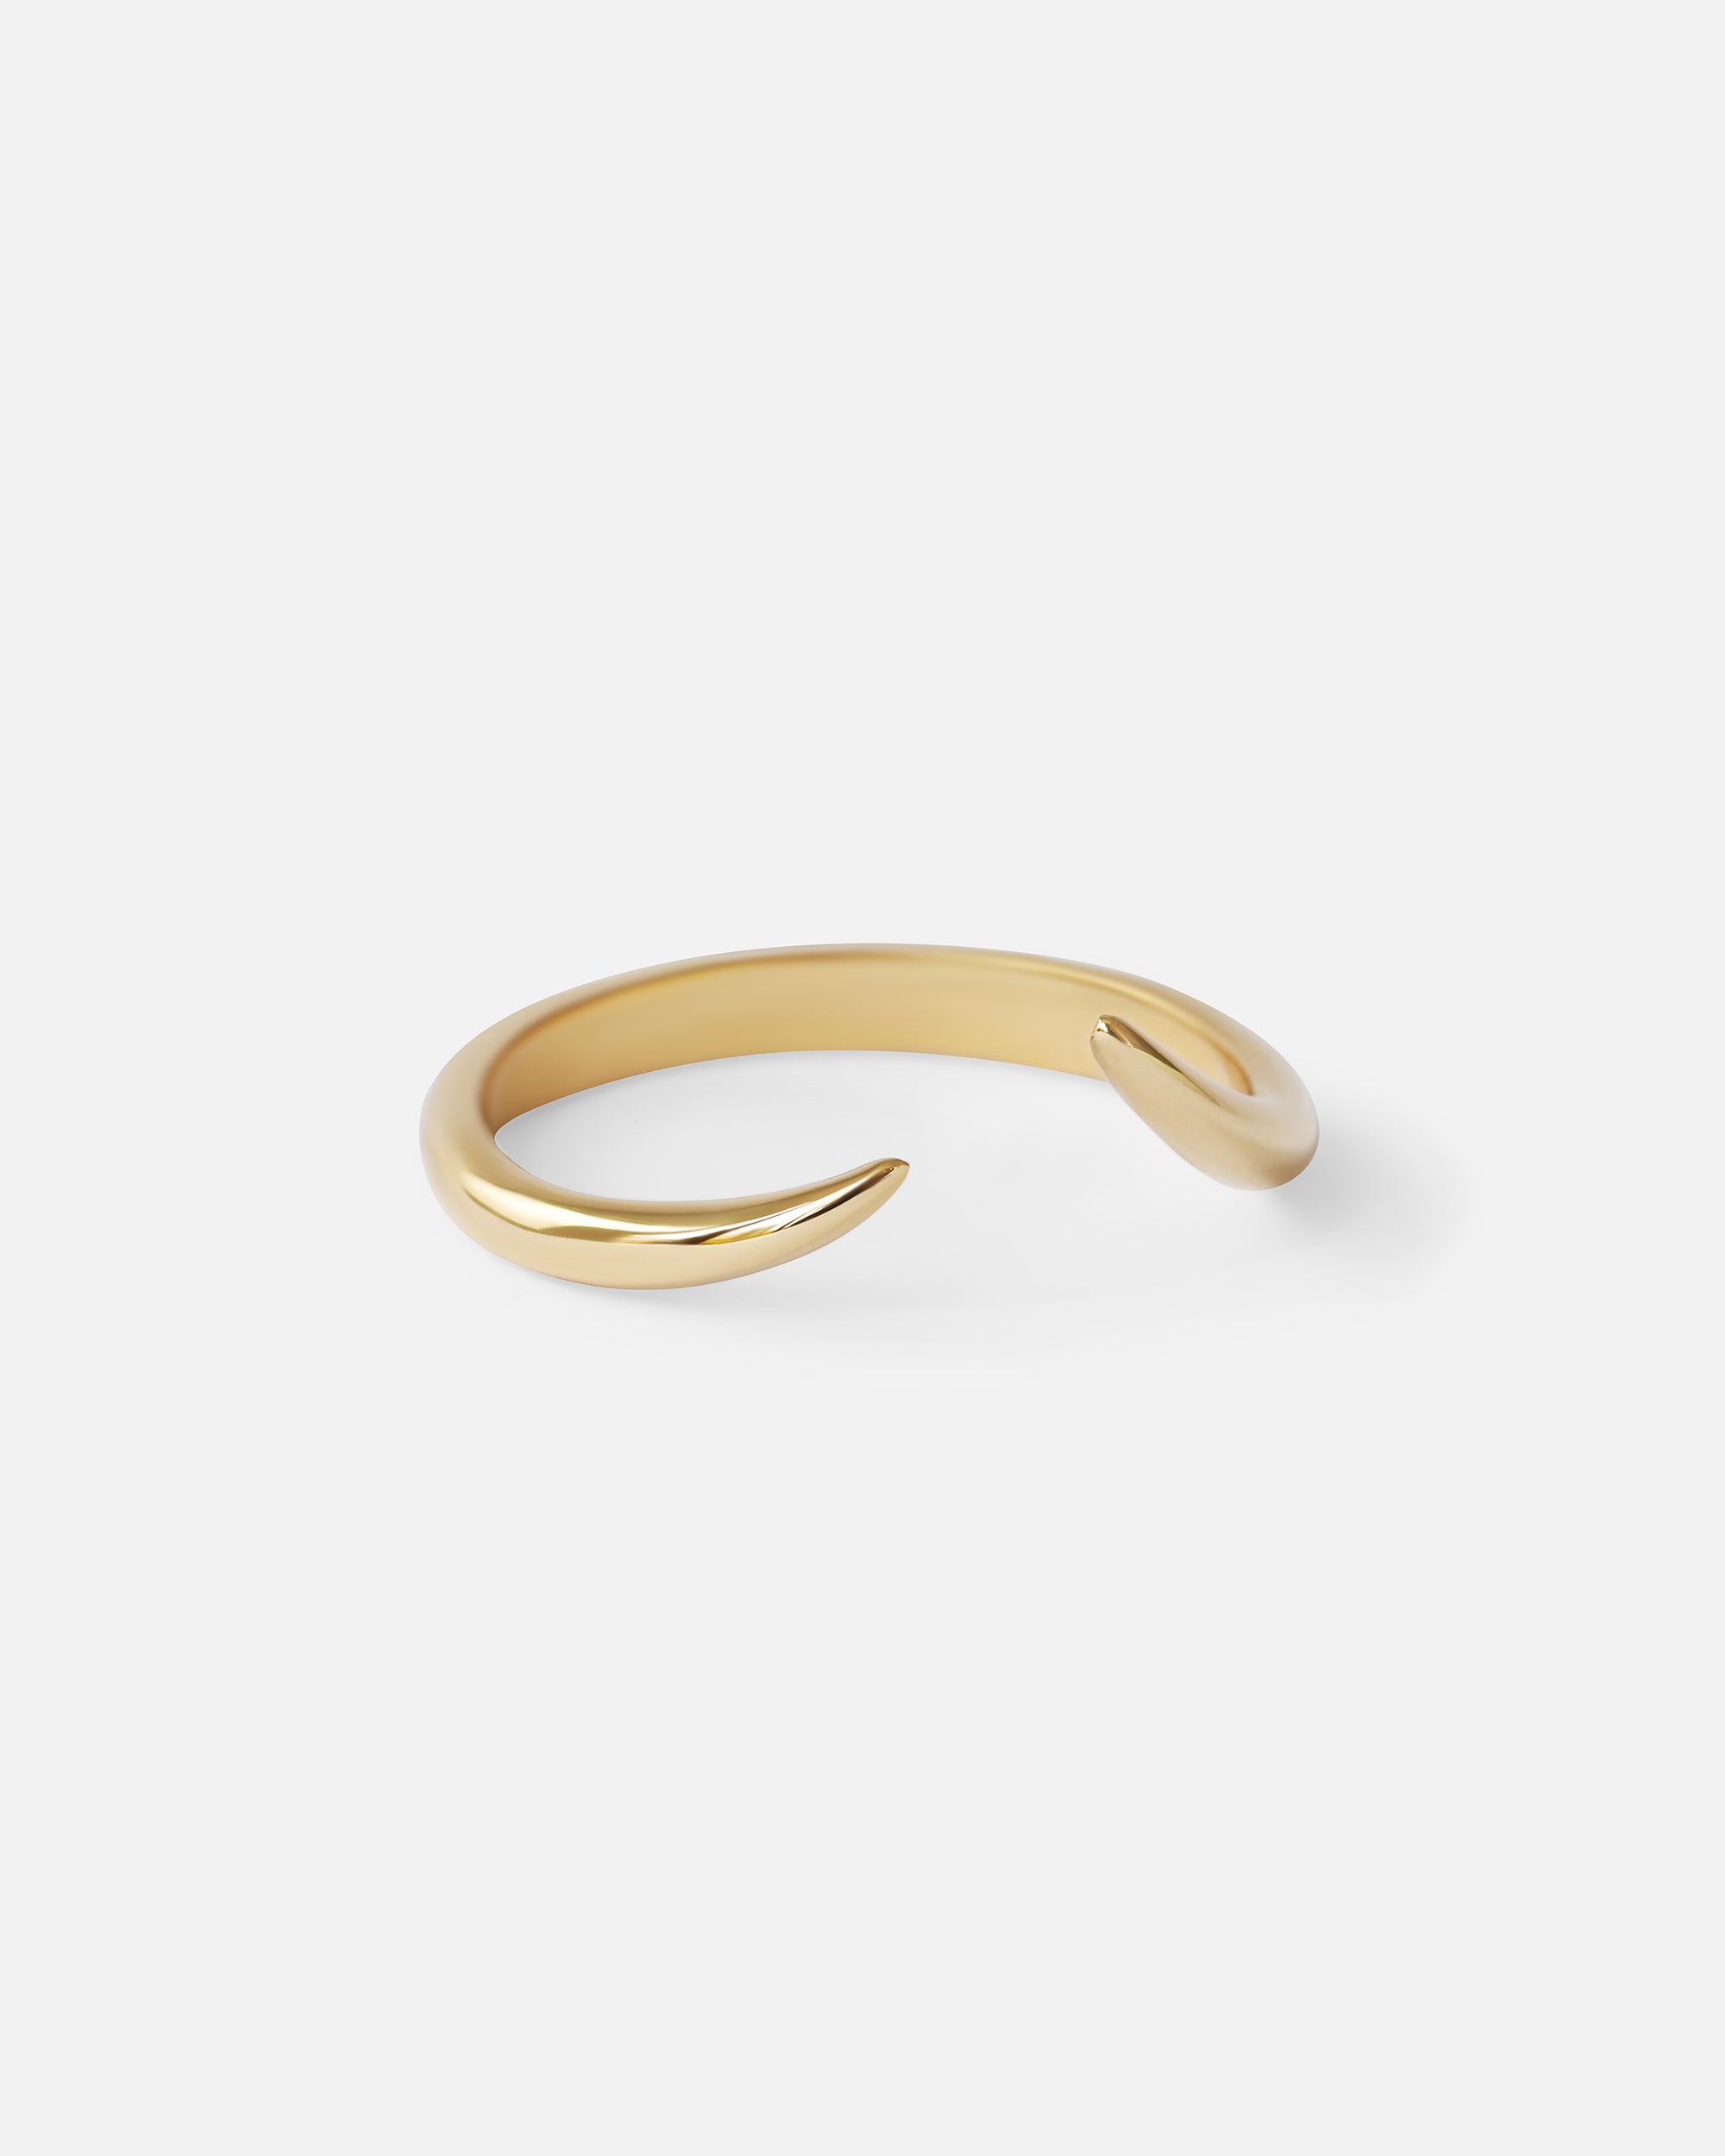 Zawadi Ring By Kestrel Dillon in rings Category